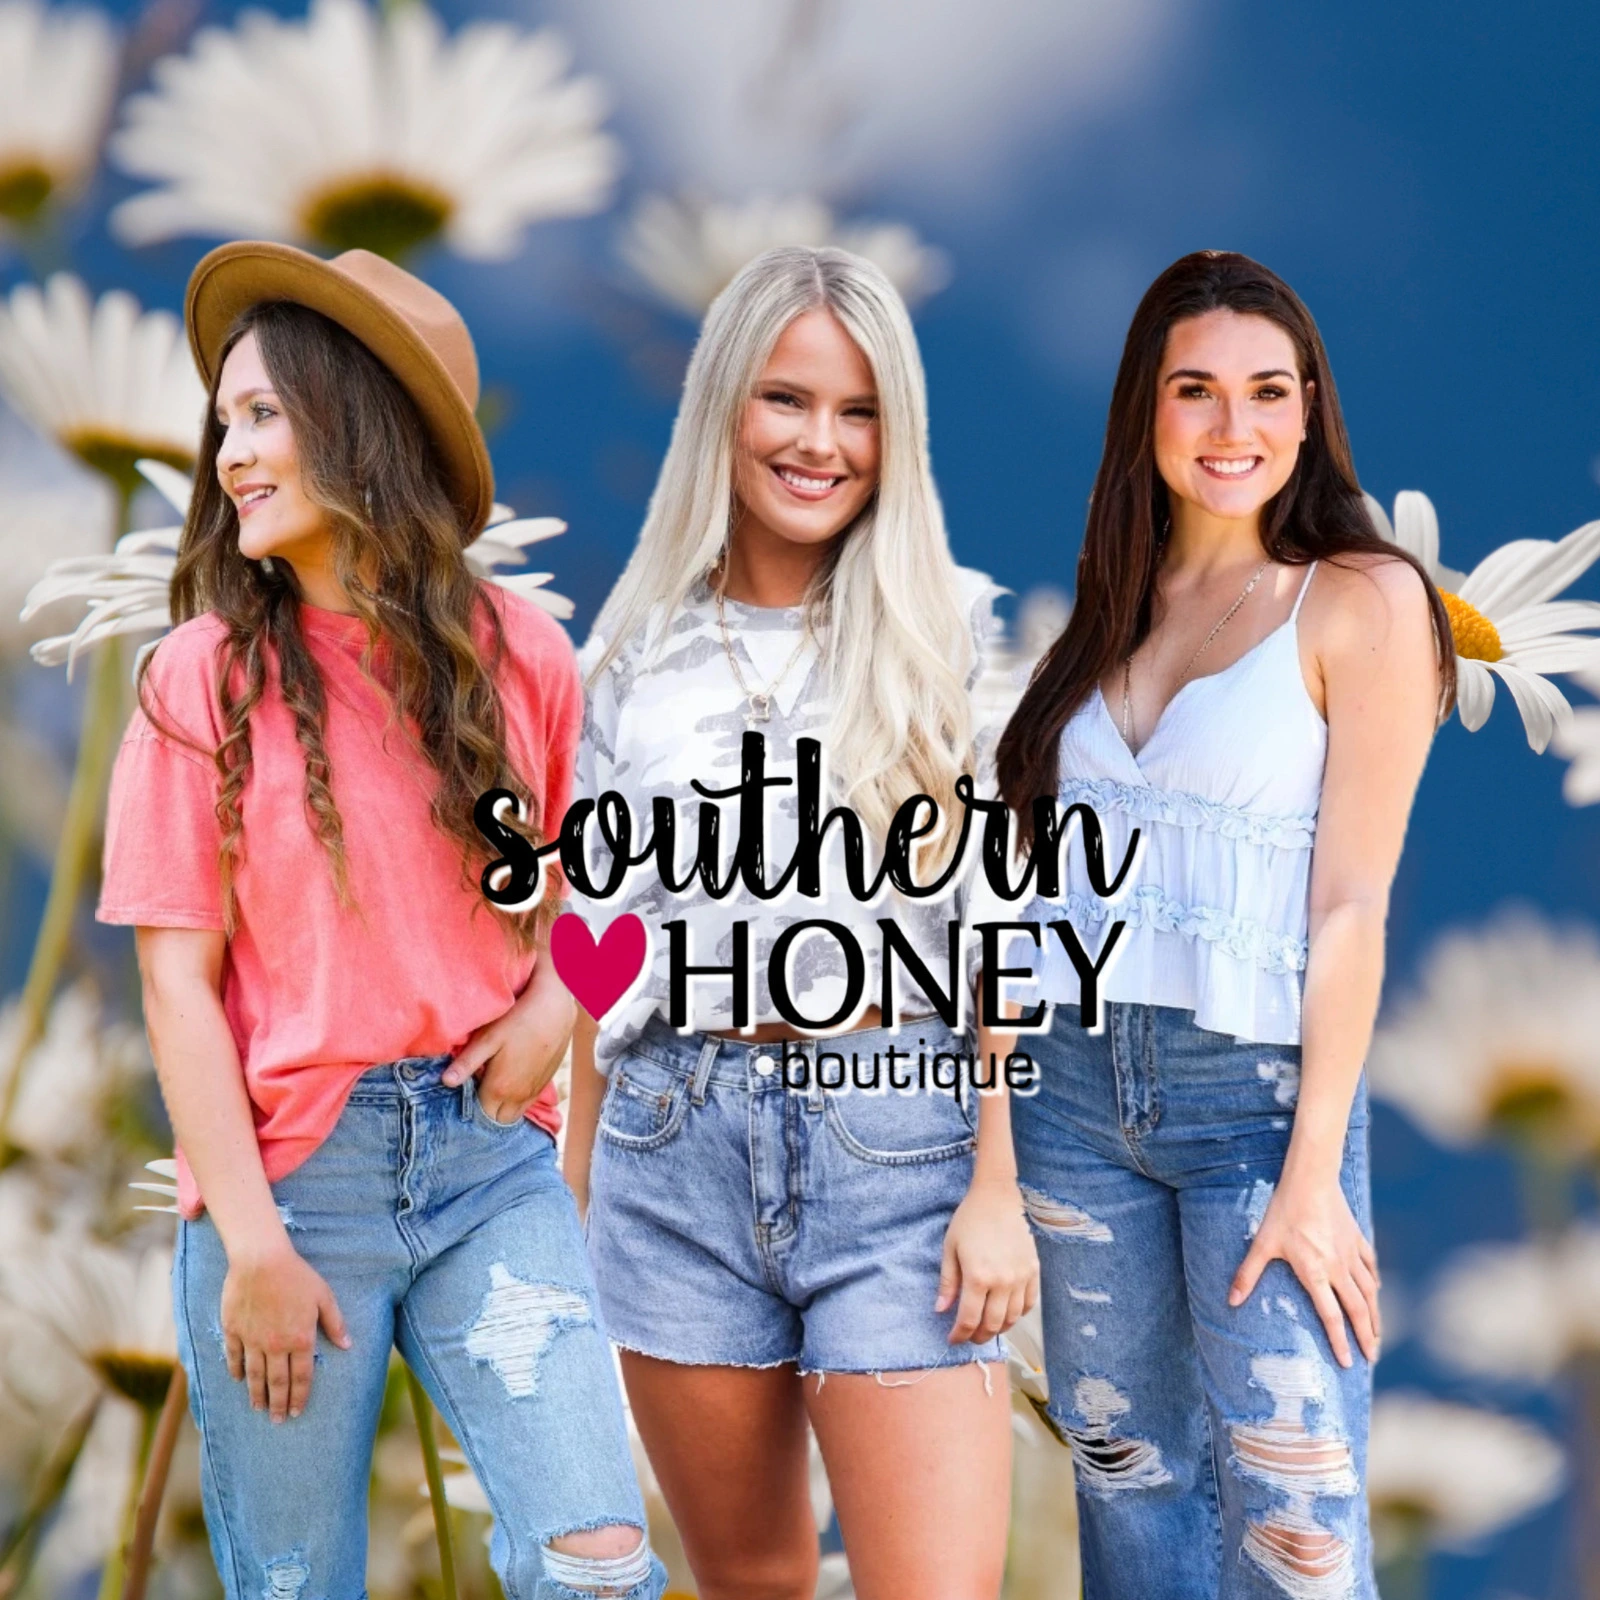 Southern-Honey-Boutique_Mobile_ET